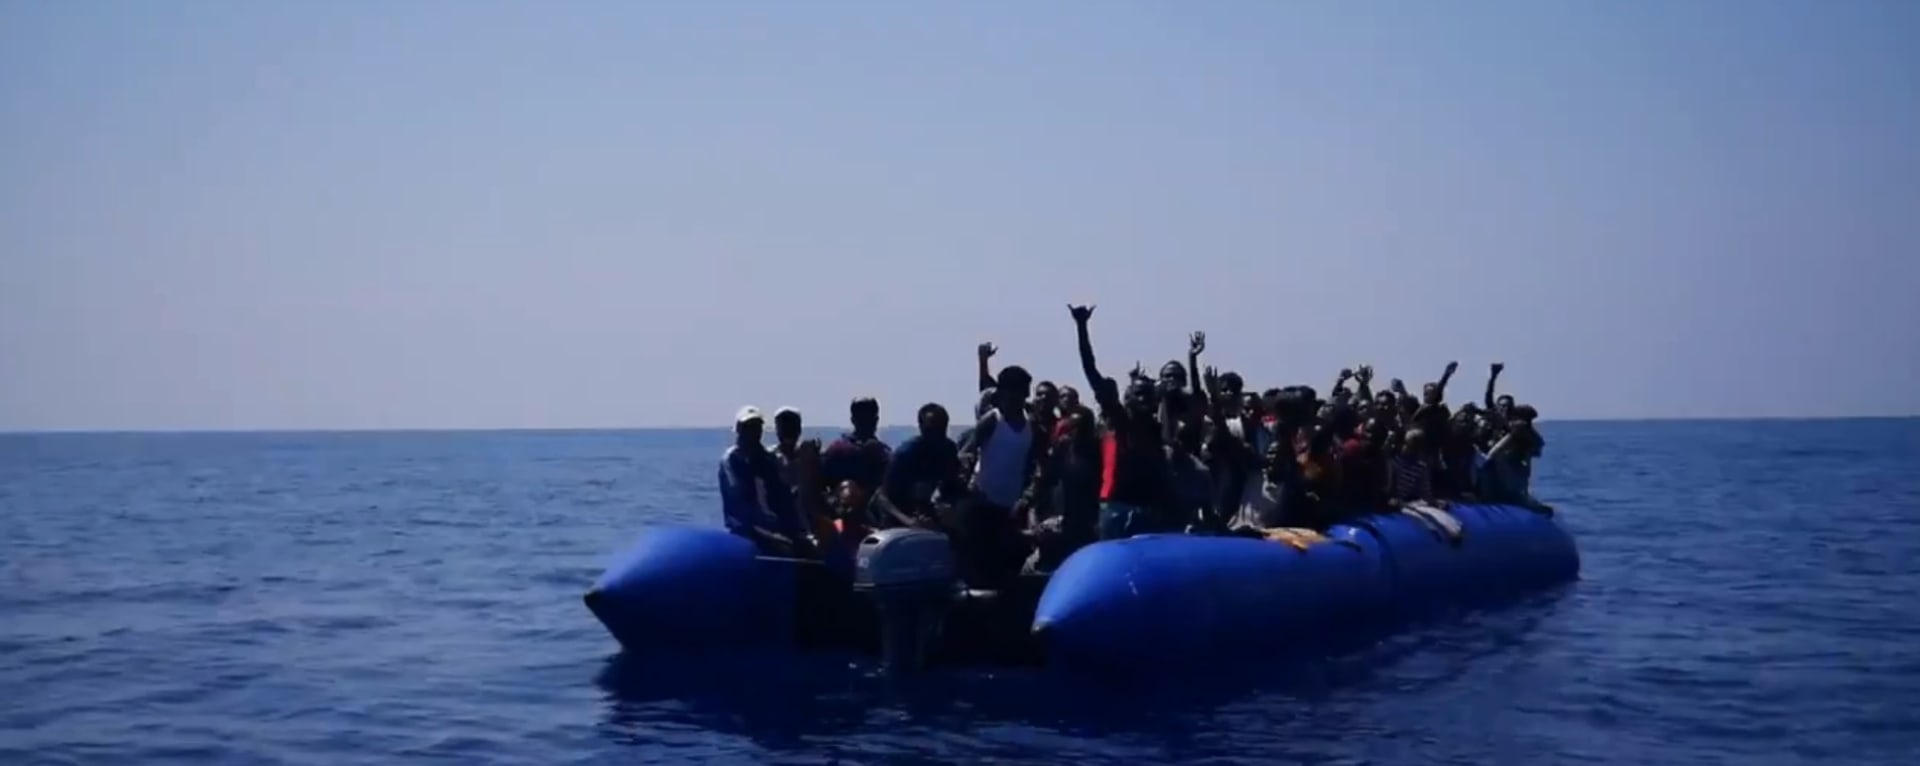 Ilustrační foto: migranti ve Středozemním moři